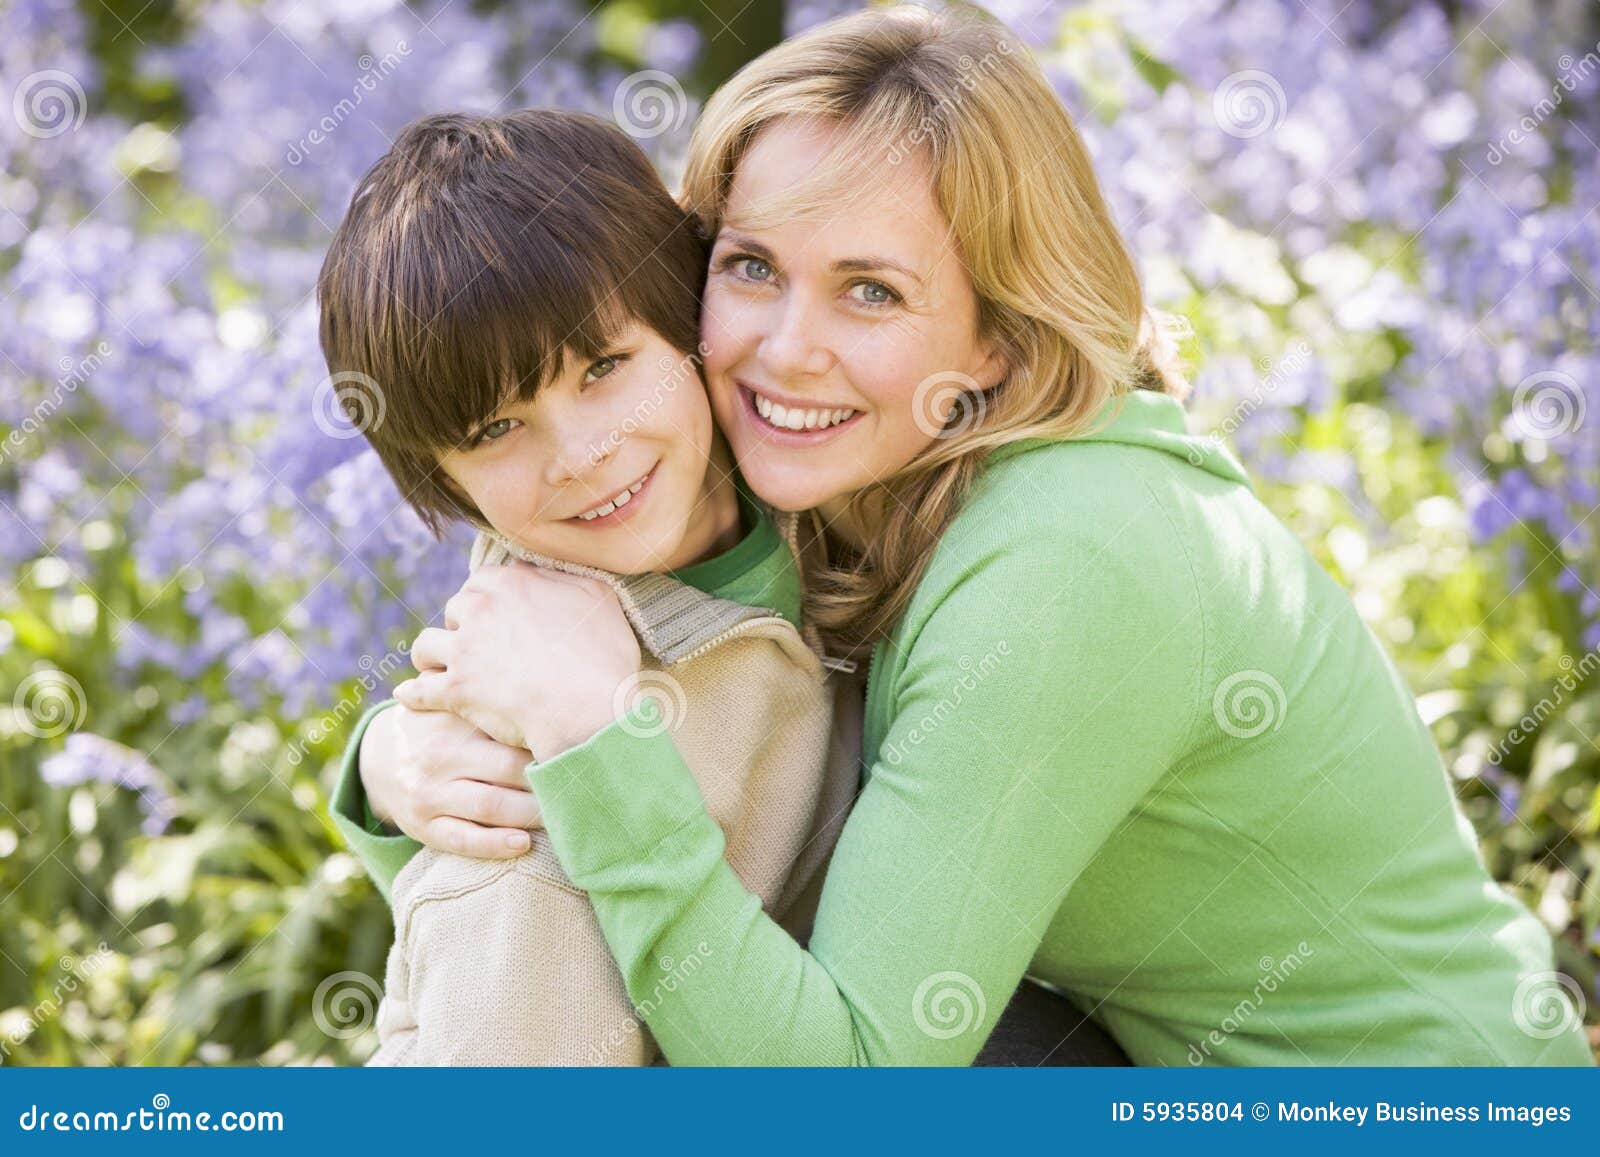 Мама и дети подростки. Мама и подросток. Красивая мама с подростком. Мальчик обнимает маму.